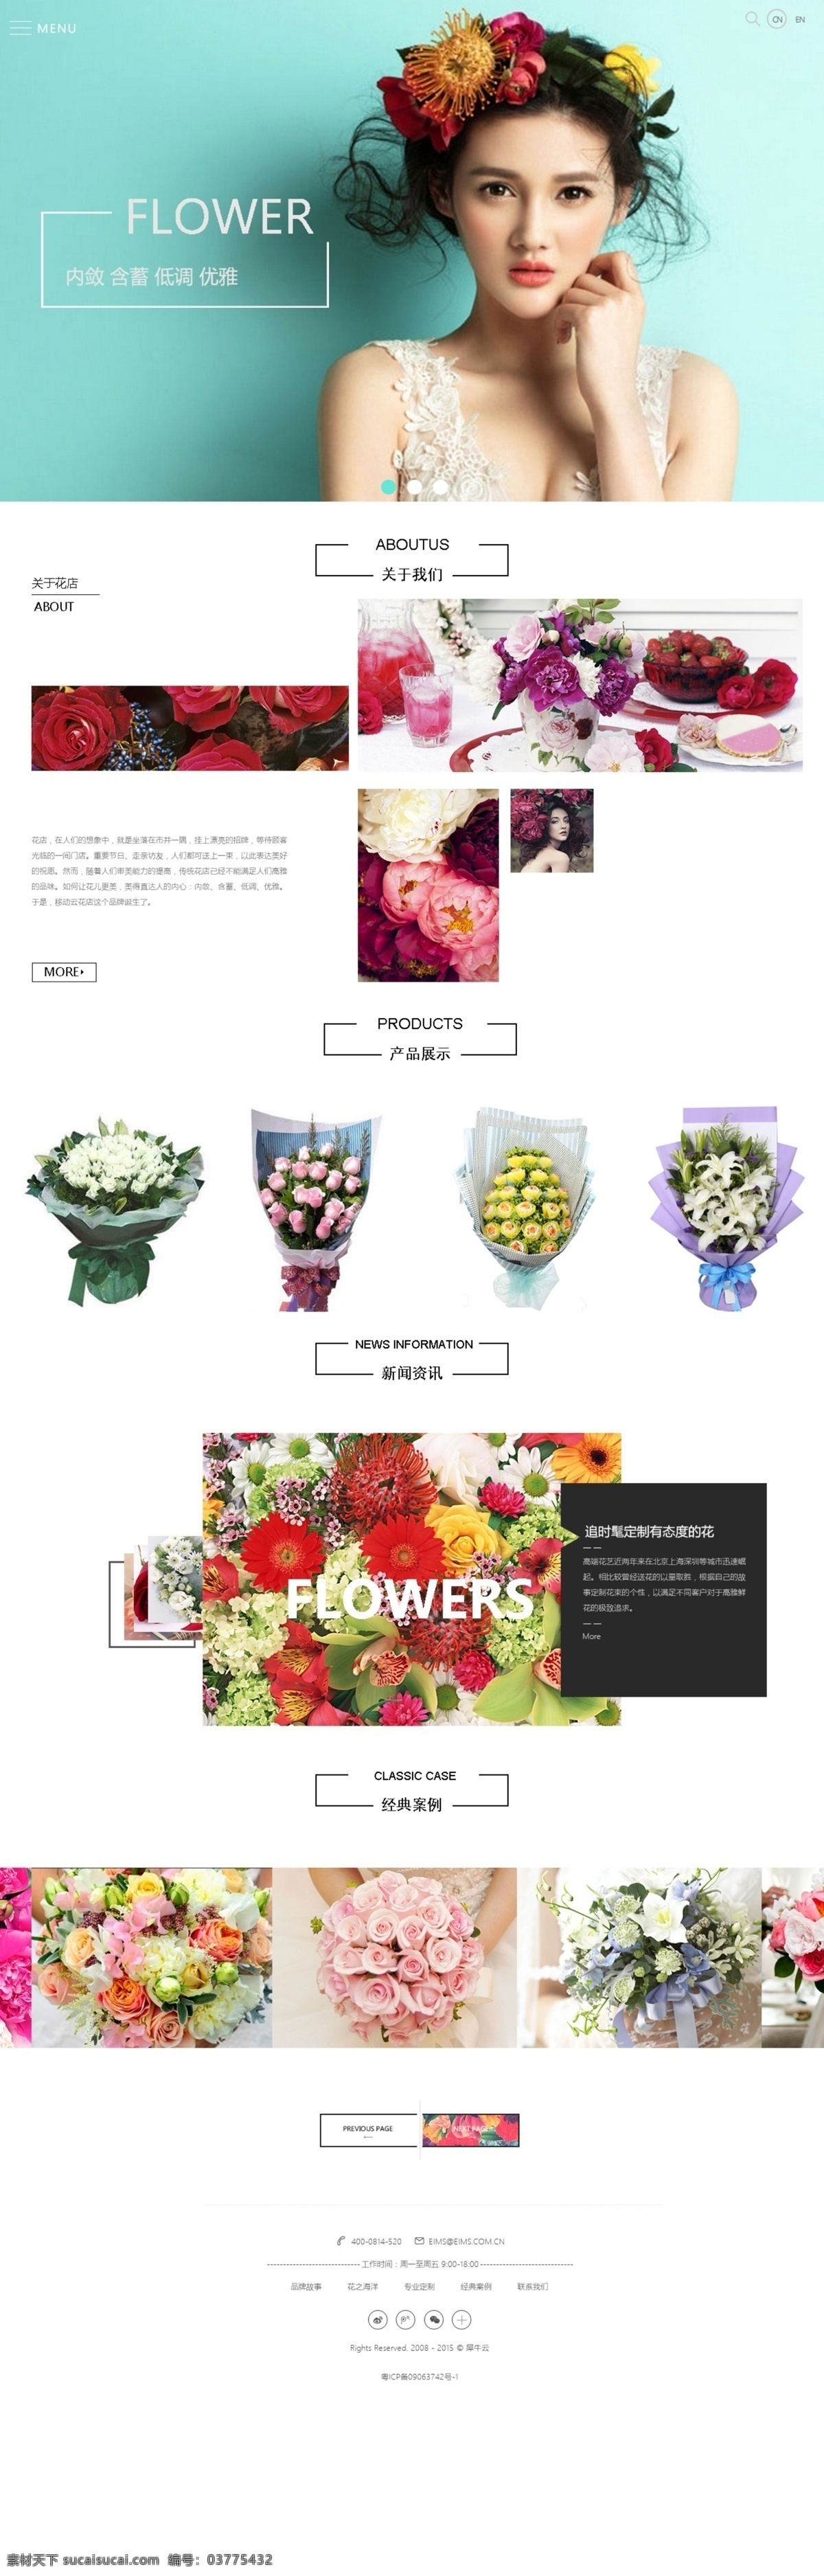 鲜花 鲜花网站 官网网站 鲜花品牌